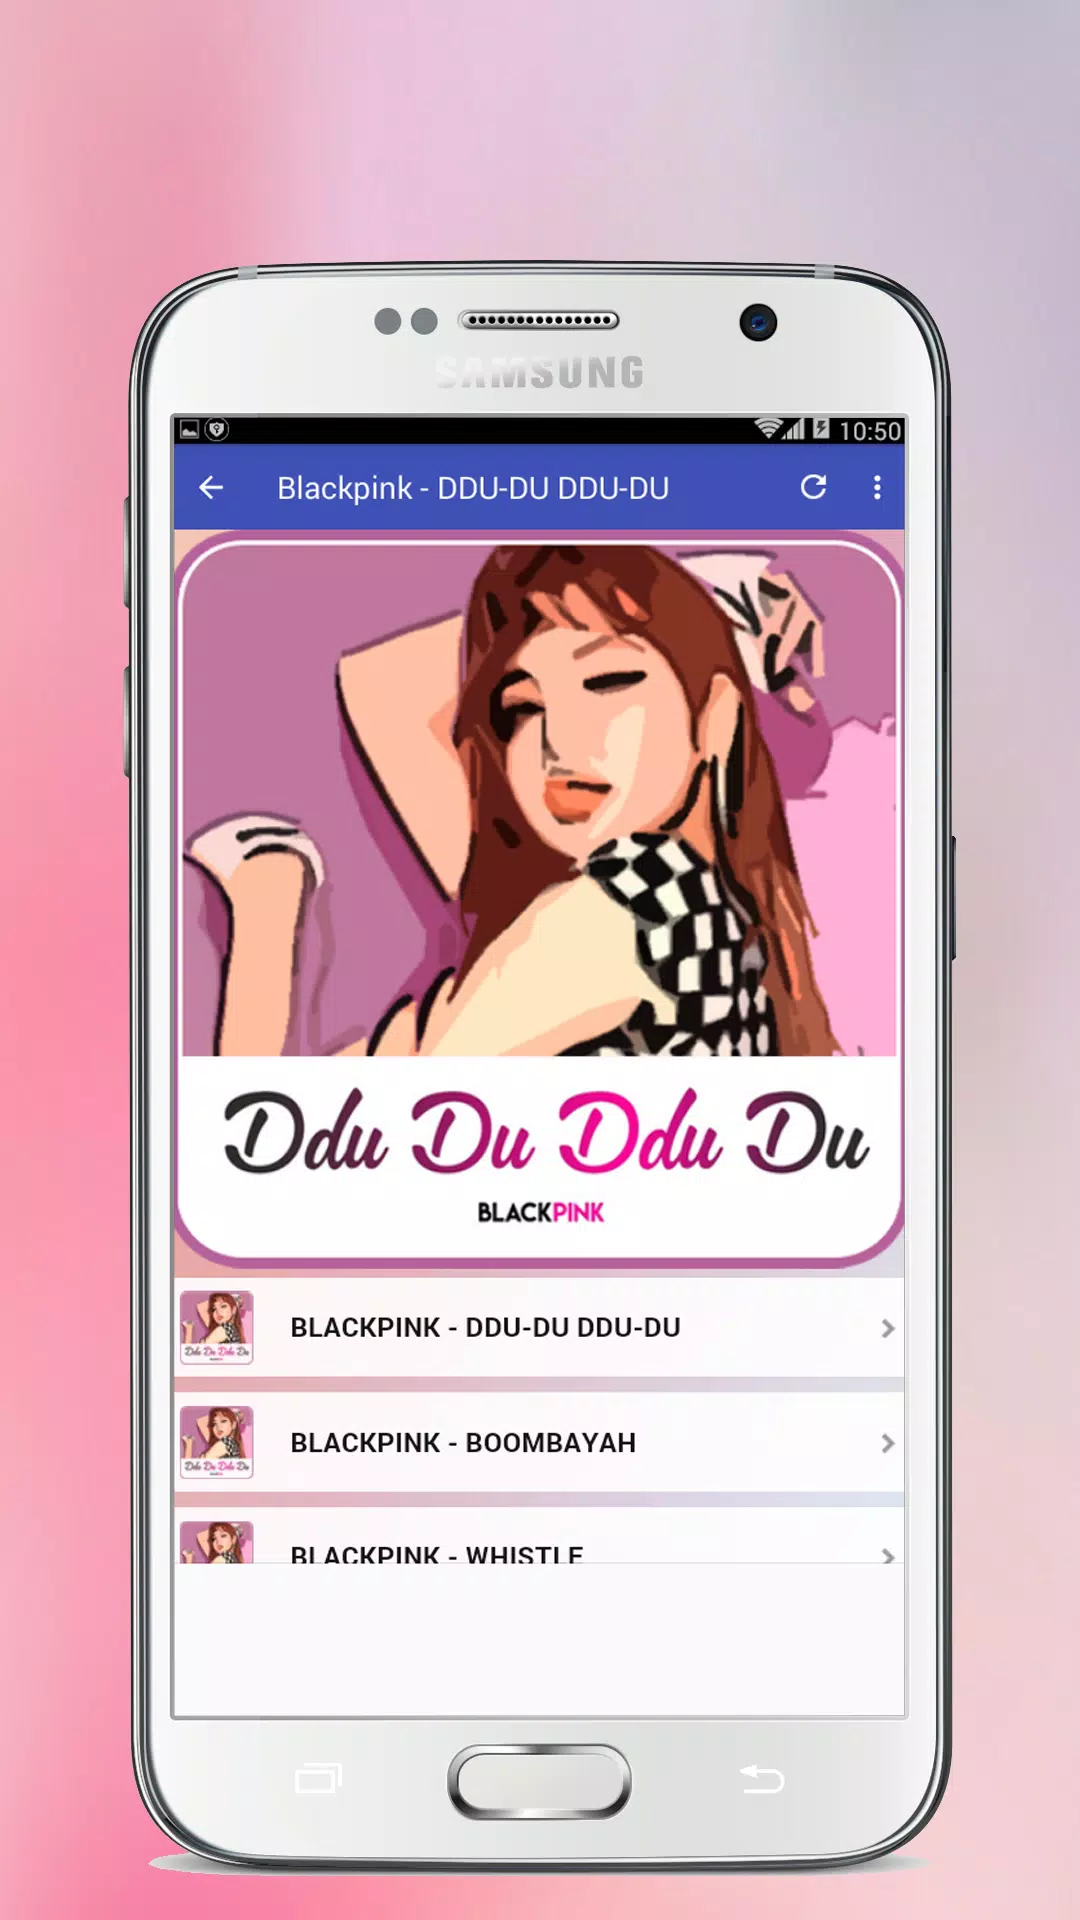 Blackpink - DDU-DU DDU-DU Mp3 Songs APK for Android Download